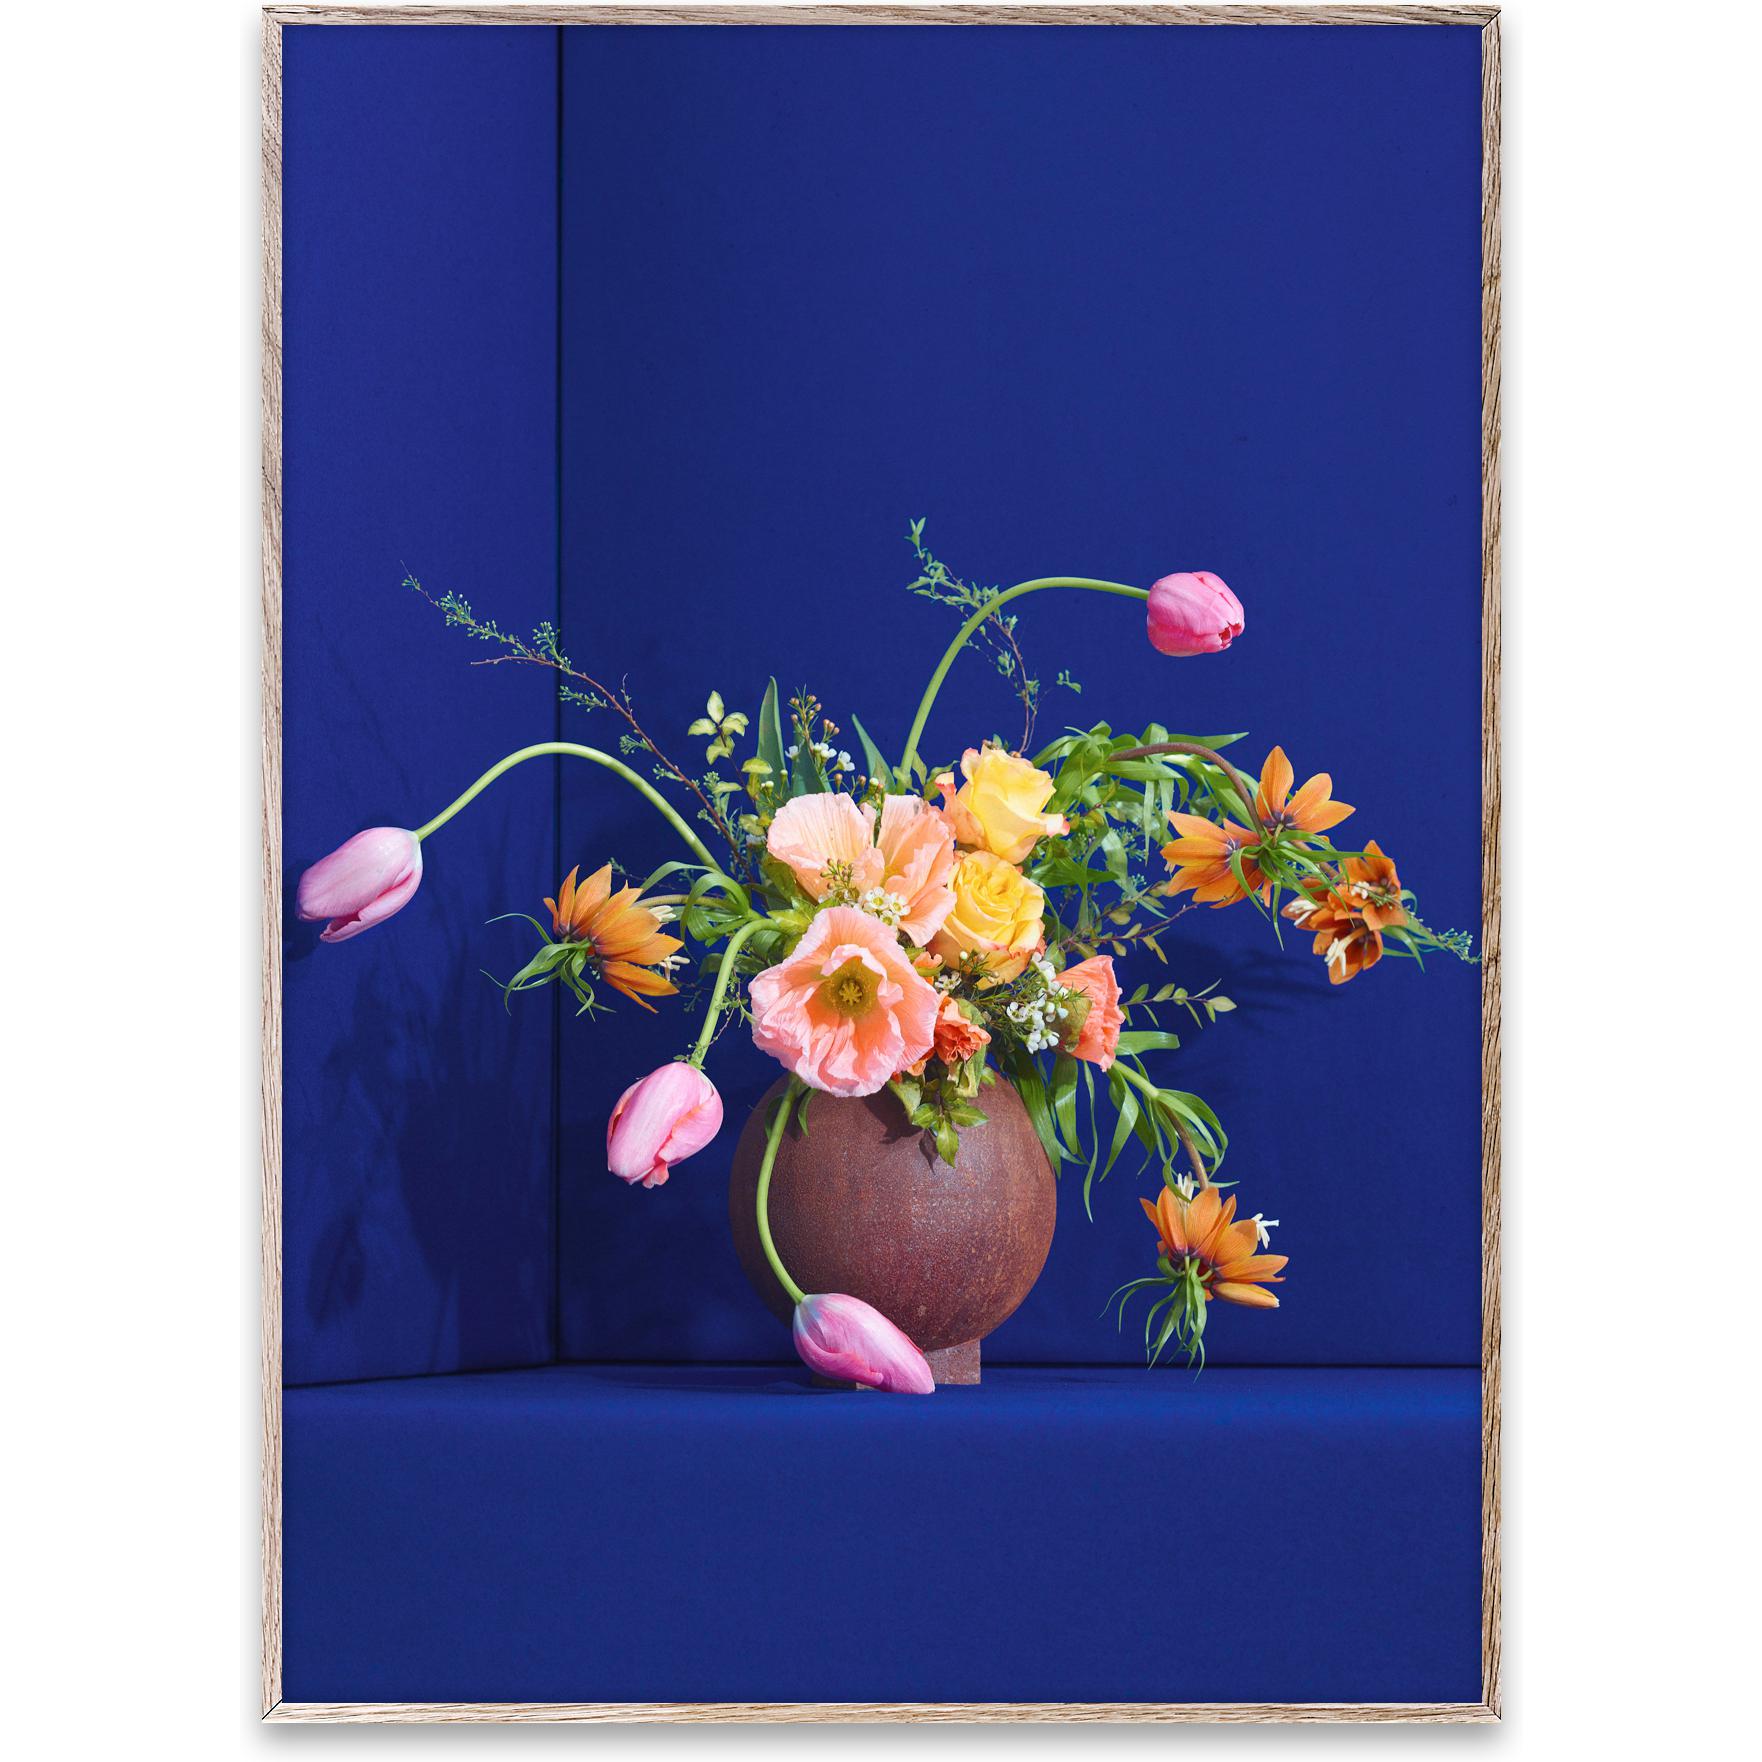 Paper Collective Flower 01 affisch 50x70 cm, blå